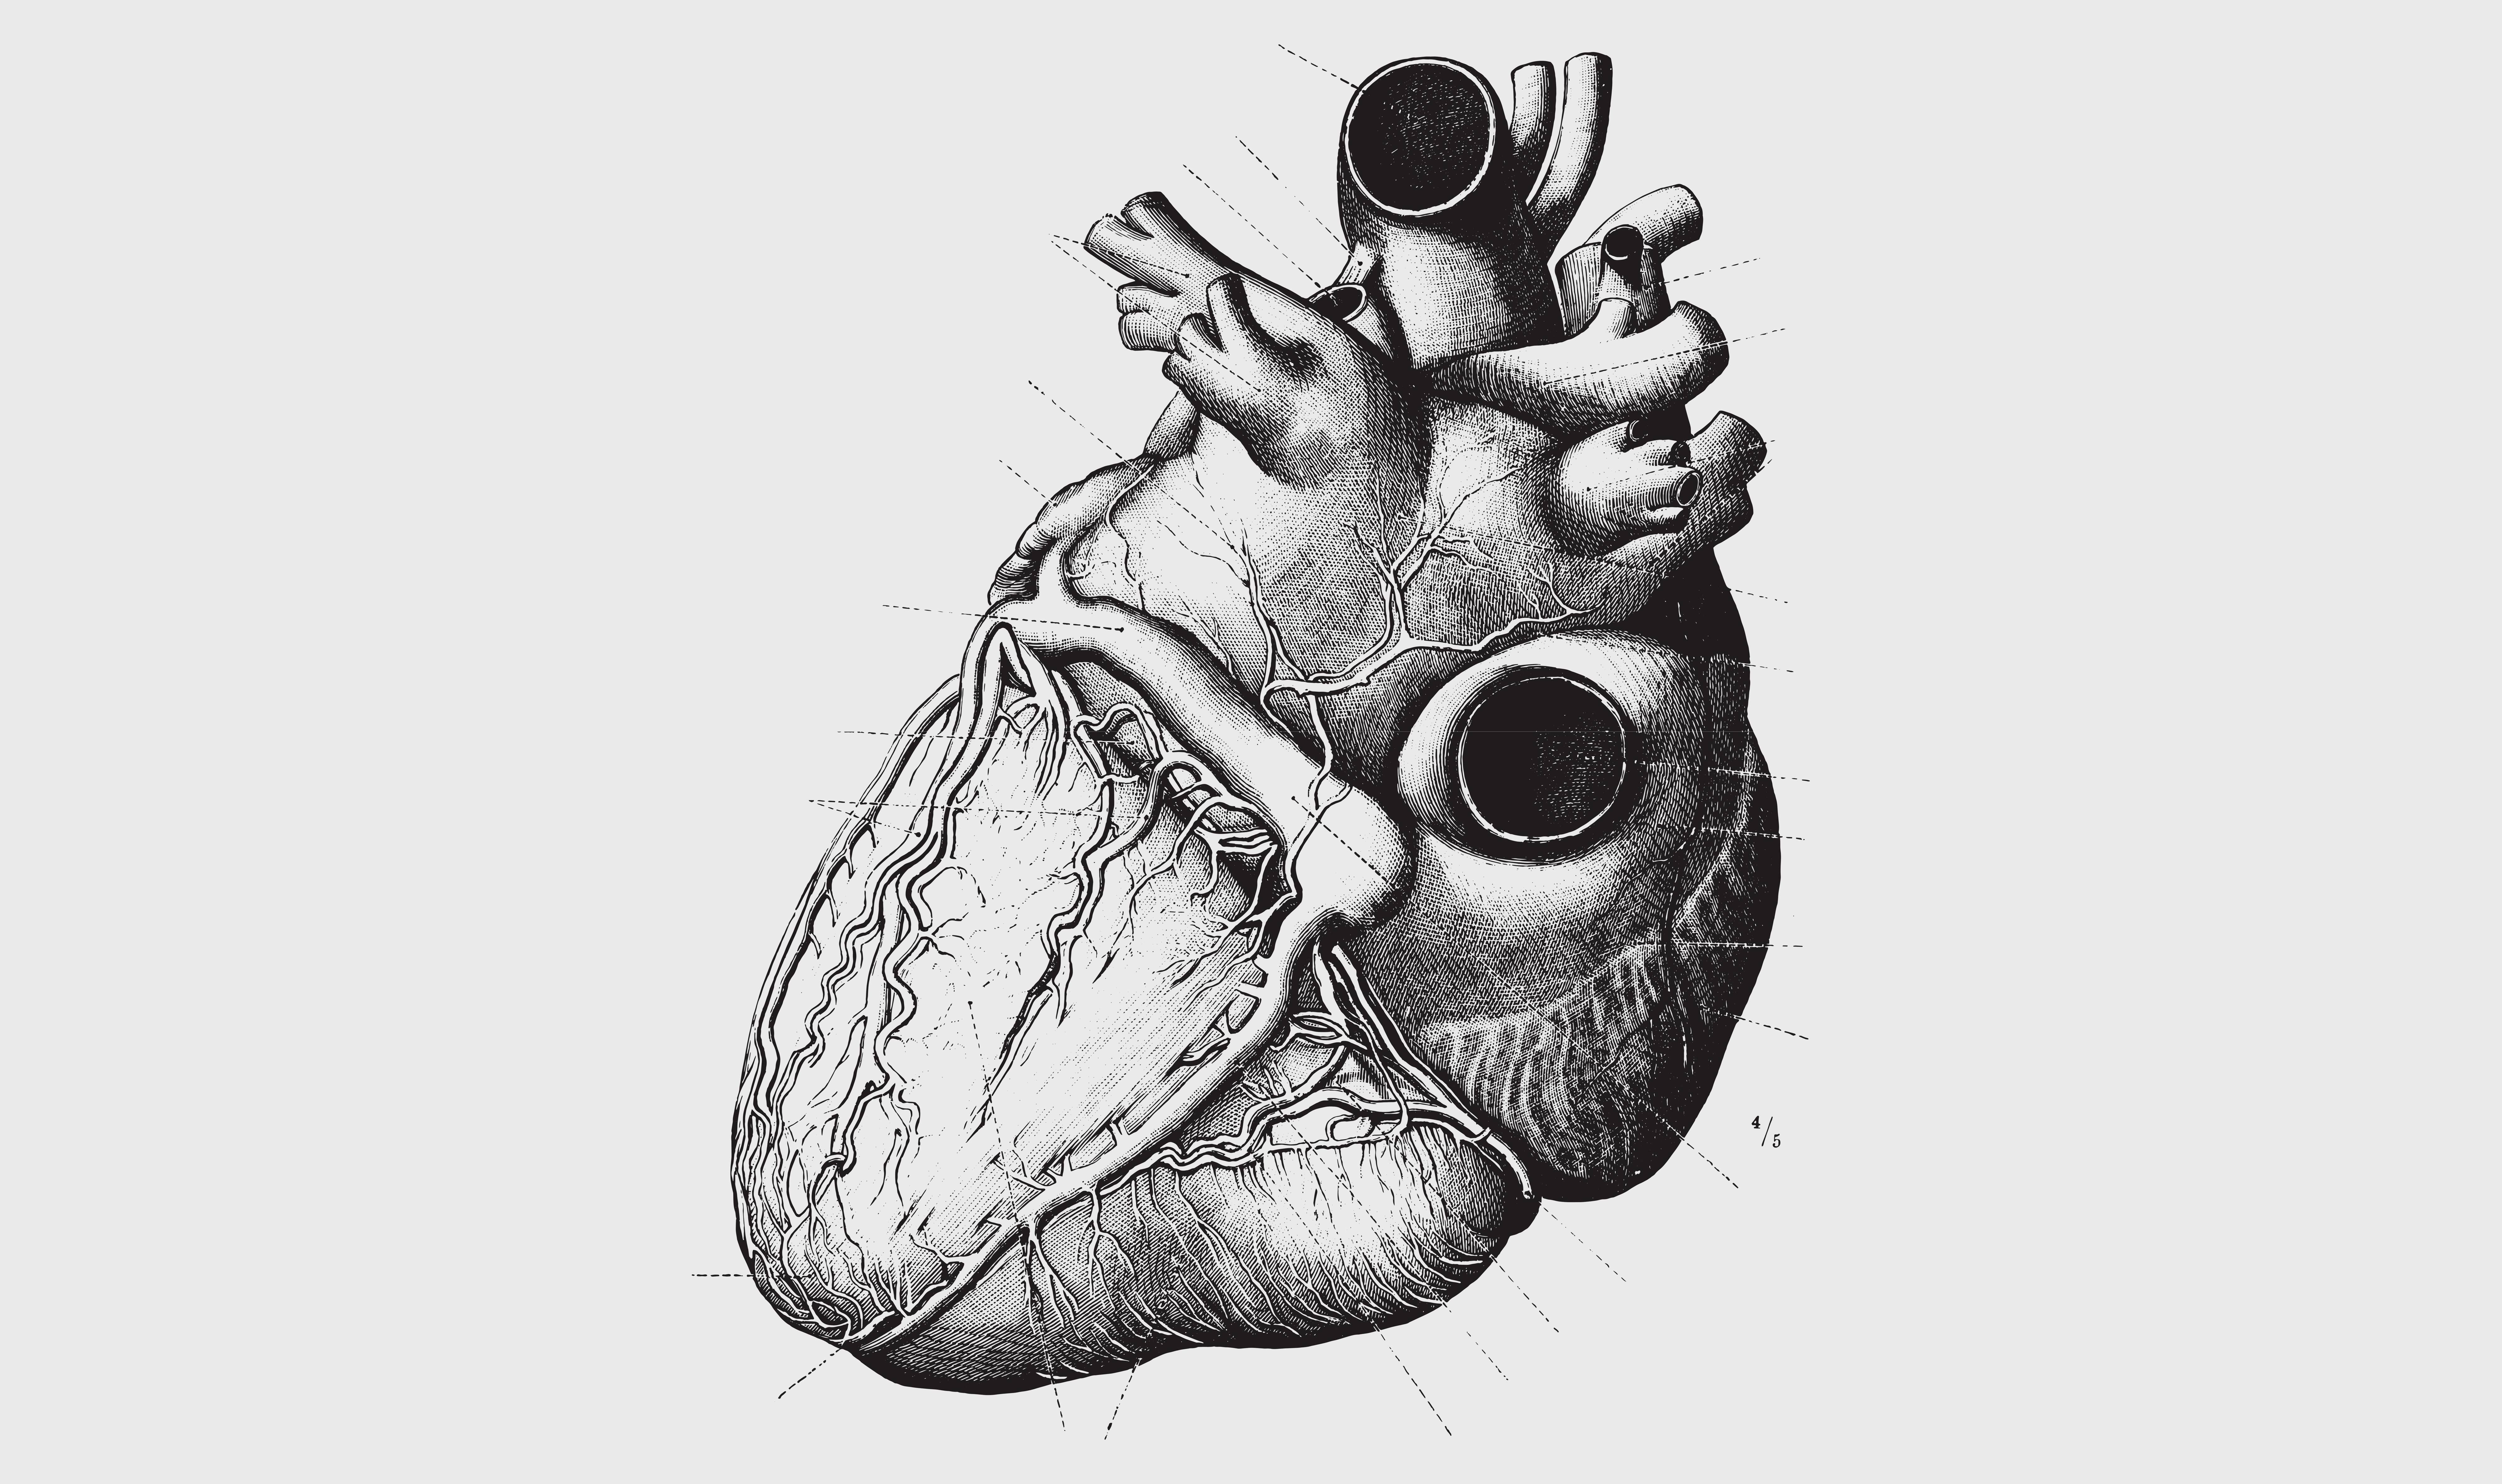 William Harvey 'ontdekt' de bloedsomloop en het belang van het hart om het bloed voort te stuwen en te laten circuleren.